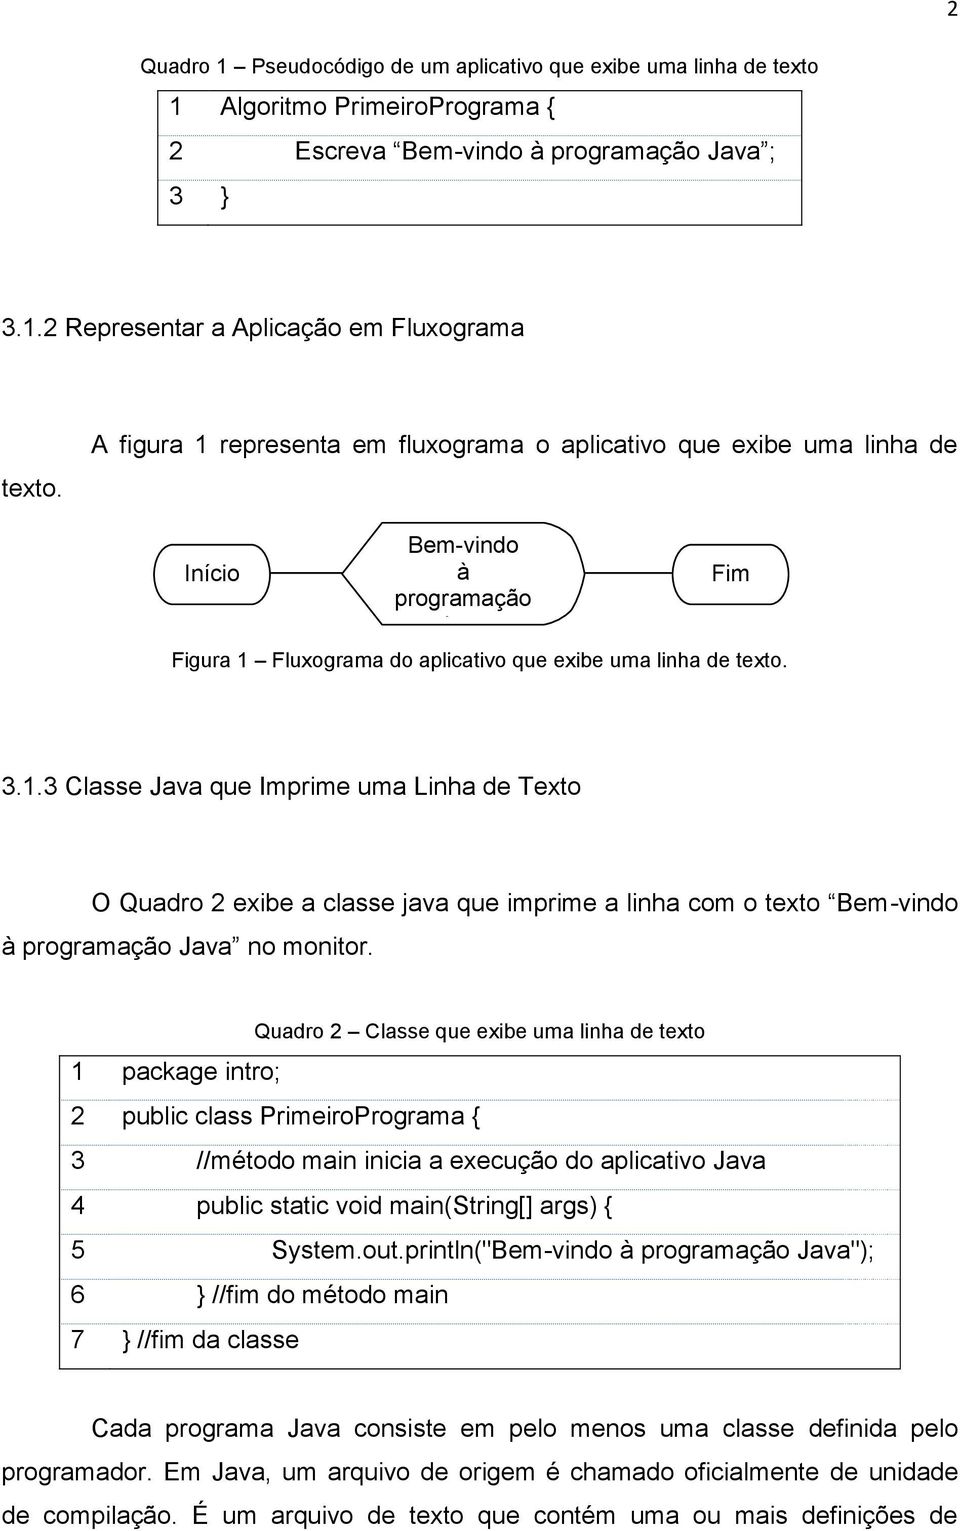 Quadro 2 Classe que exibe uma linha de texto 1 package intro; 2 public class PrimeiroPrograma { 3 //método main inicia a execução do aplicativo Java 4 public static void main(string[] args) { 5